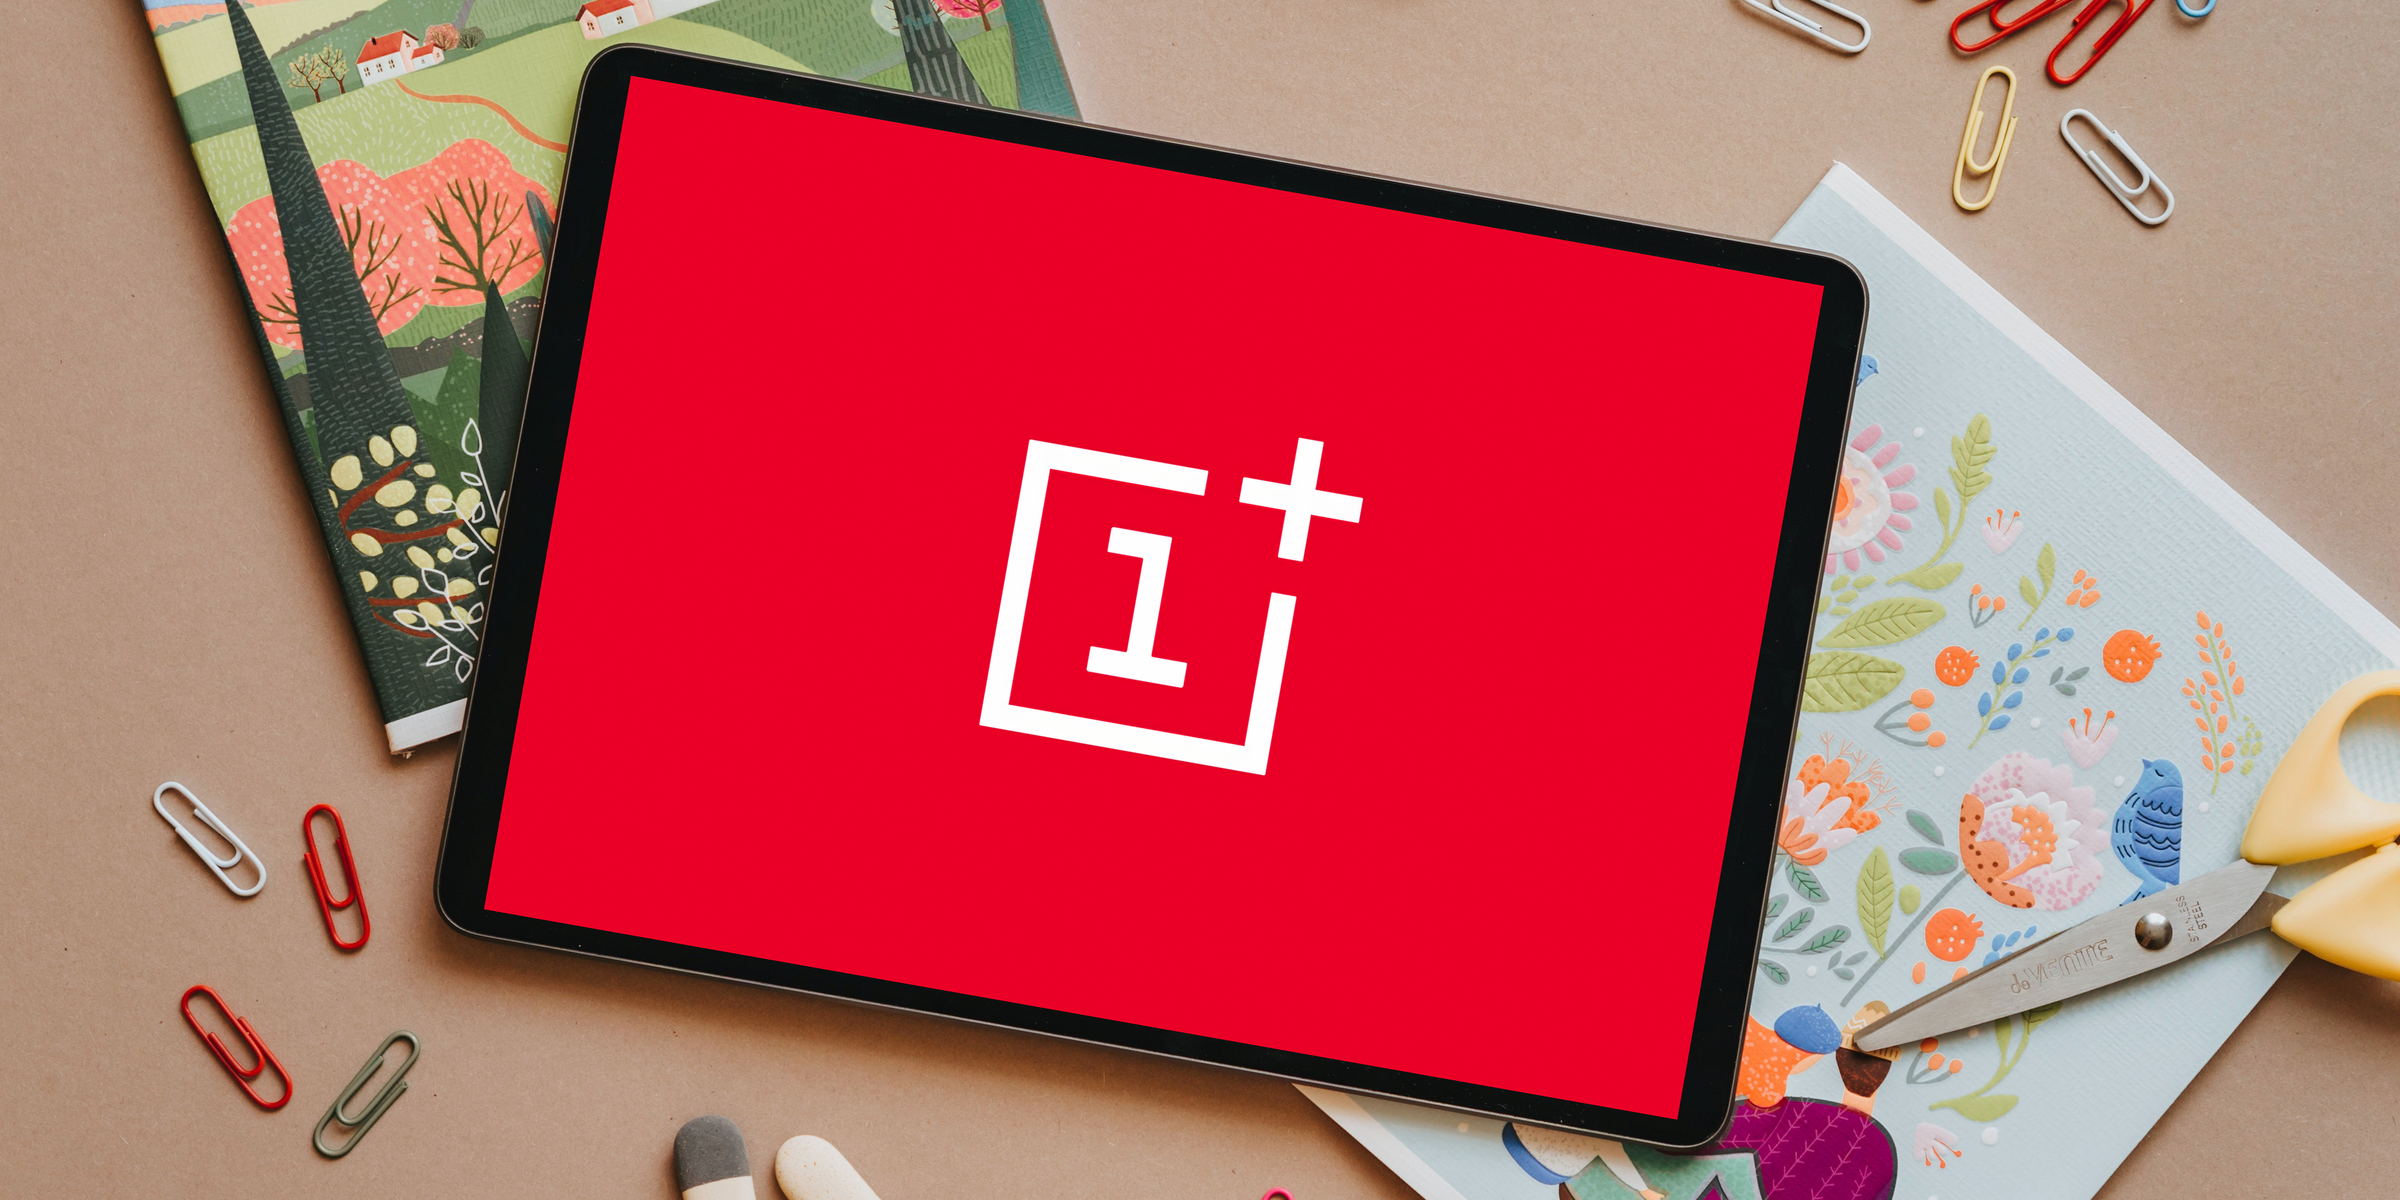 OnePlus arbeitet an seinem ersten Tablet, es wird 2022 vorgestellt